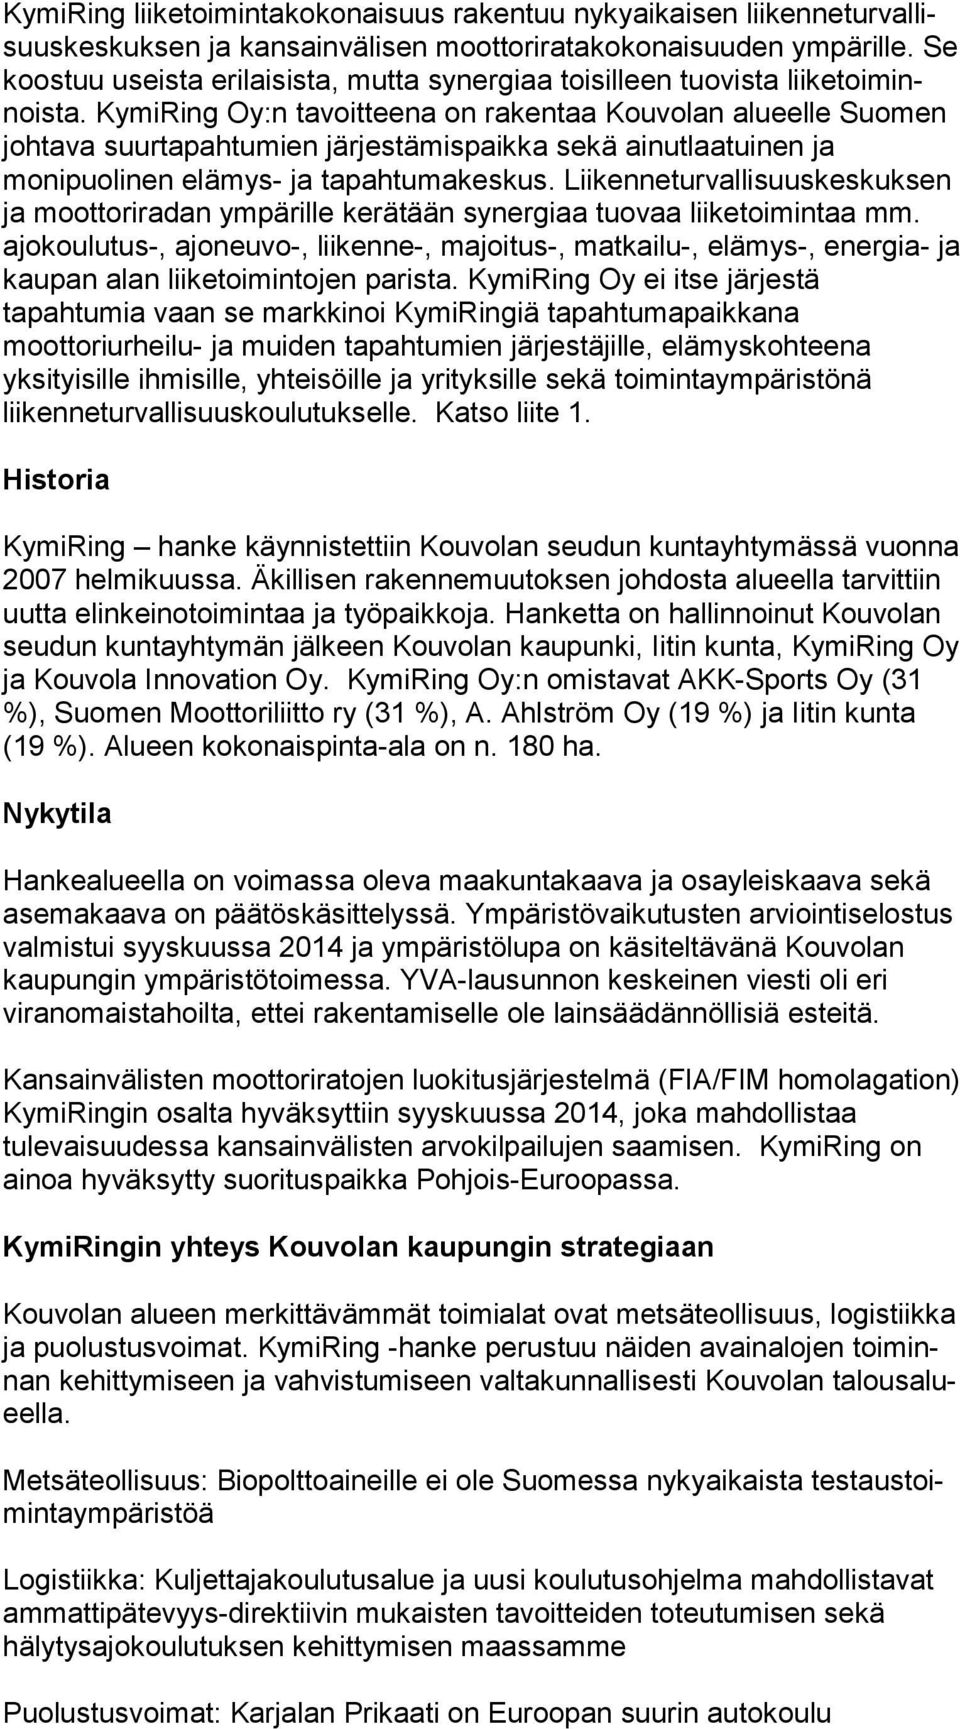 KymiRing Oy:n tavoitteena on rakentaa Kouvolan alu eel le Suomen johtava suurtapahtumien järjestämispaikka sekä ai nut laa tui nen ja monipuolinen elämys- ja tapahtumakeskus.